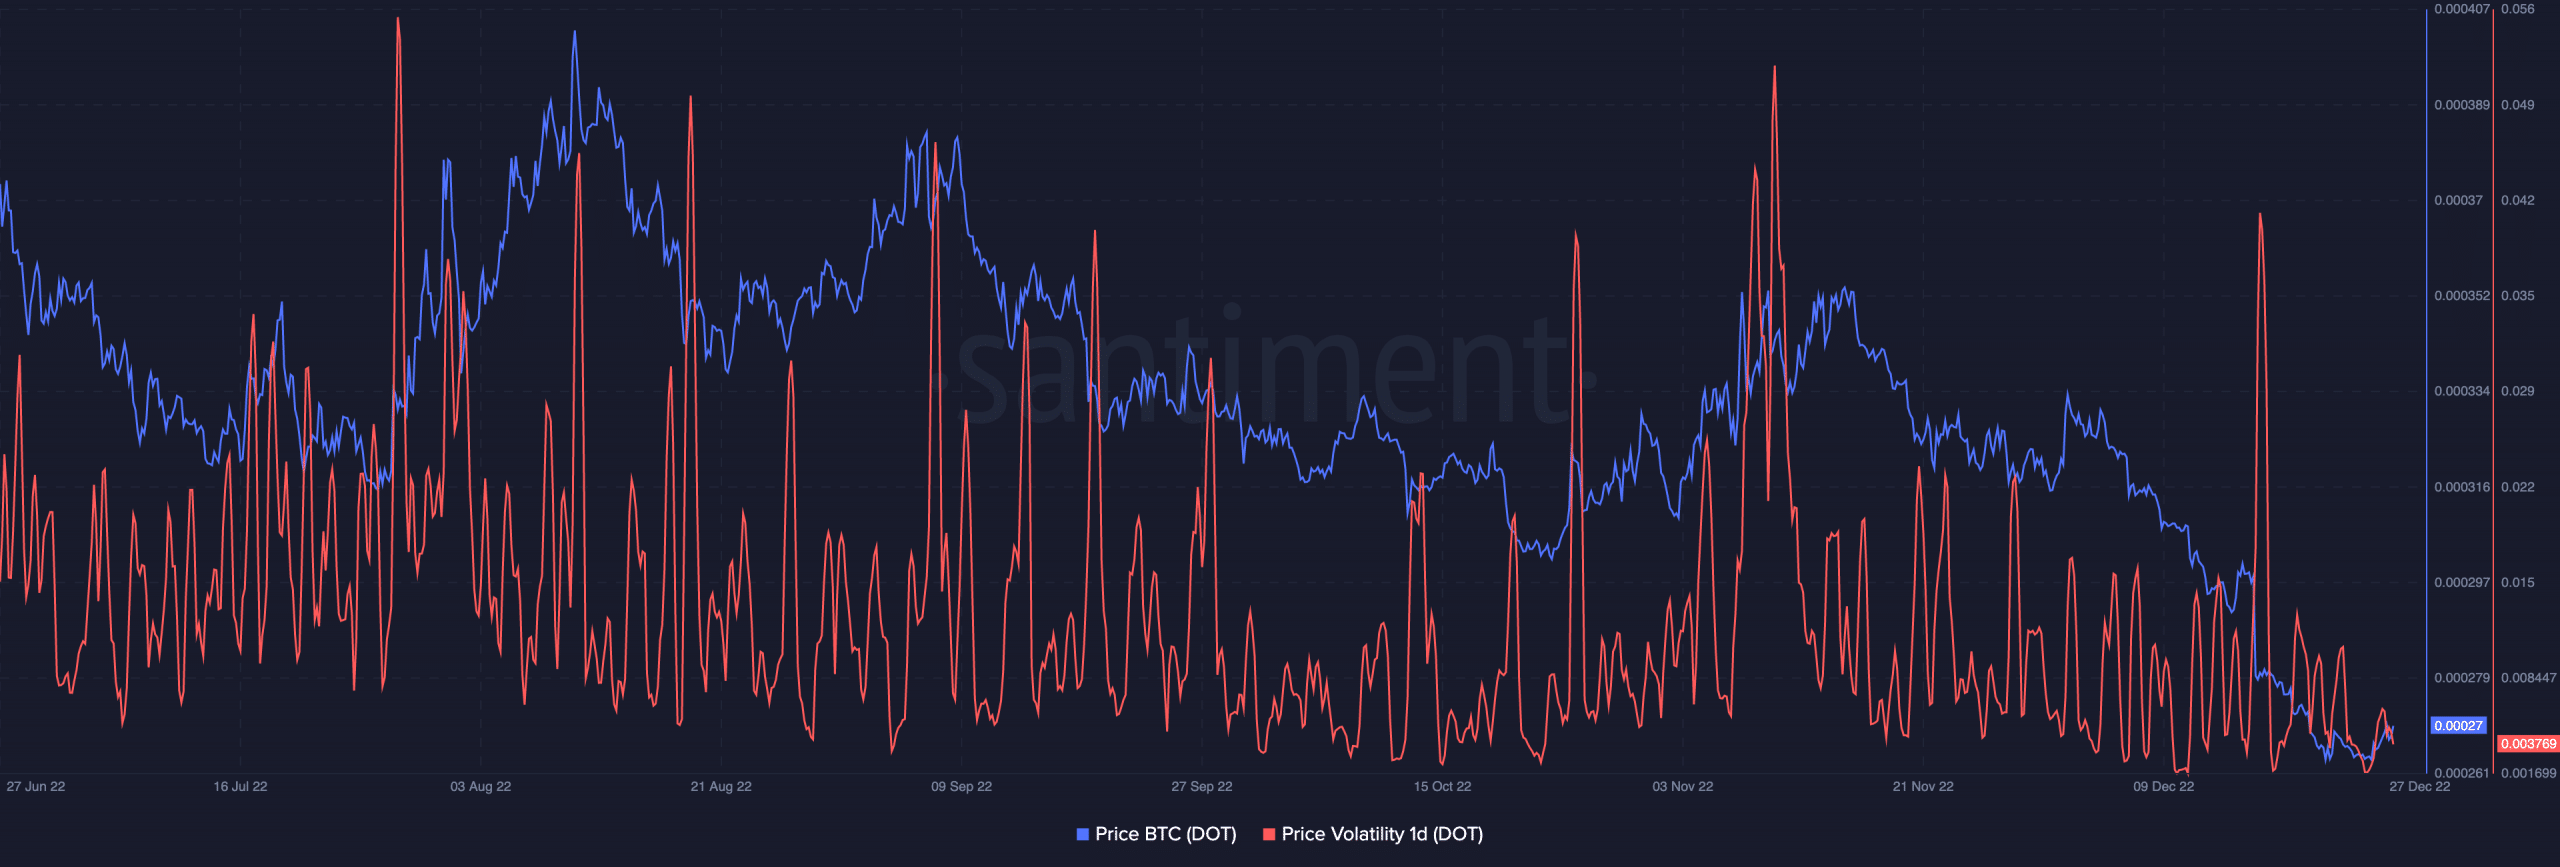 Volatilidade do preço da Polkadot e preço em relação ao Bitcoin